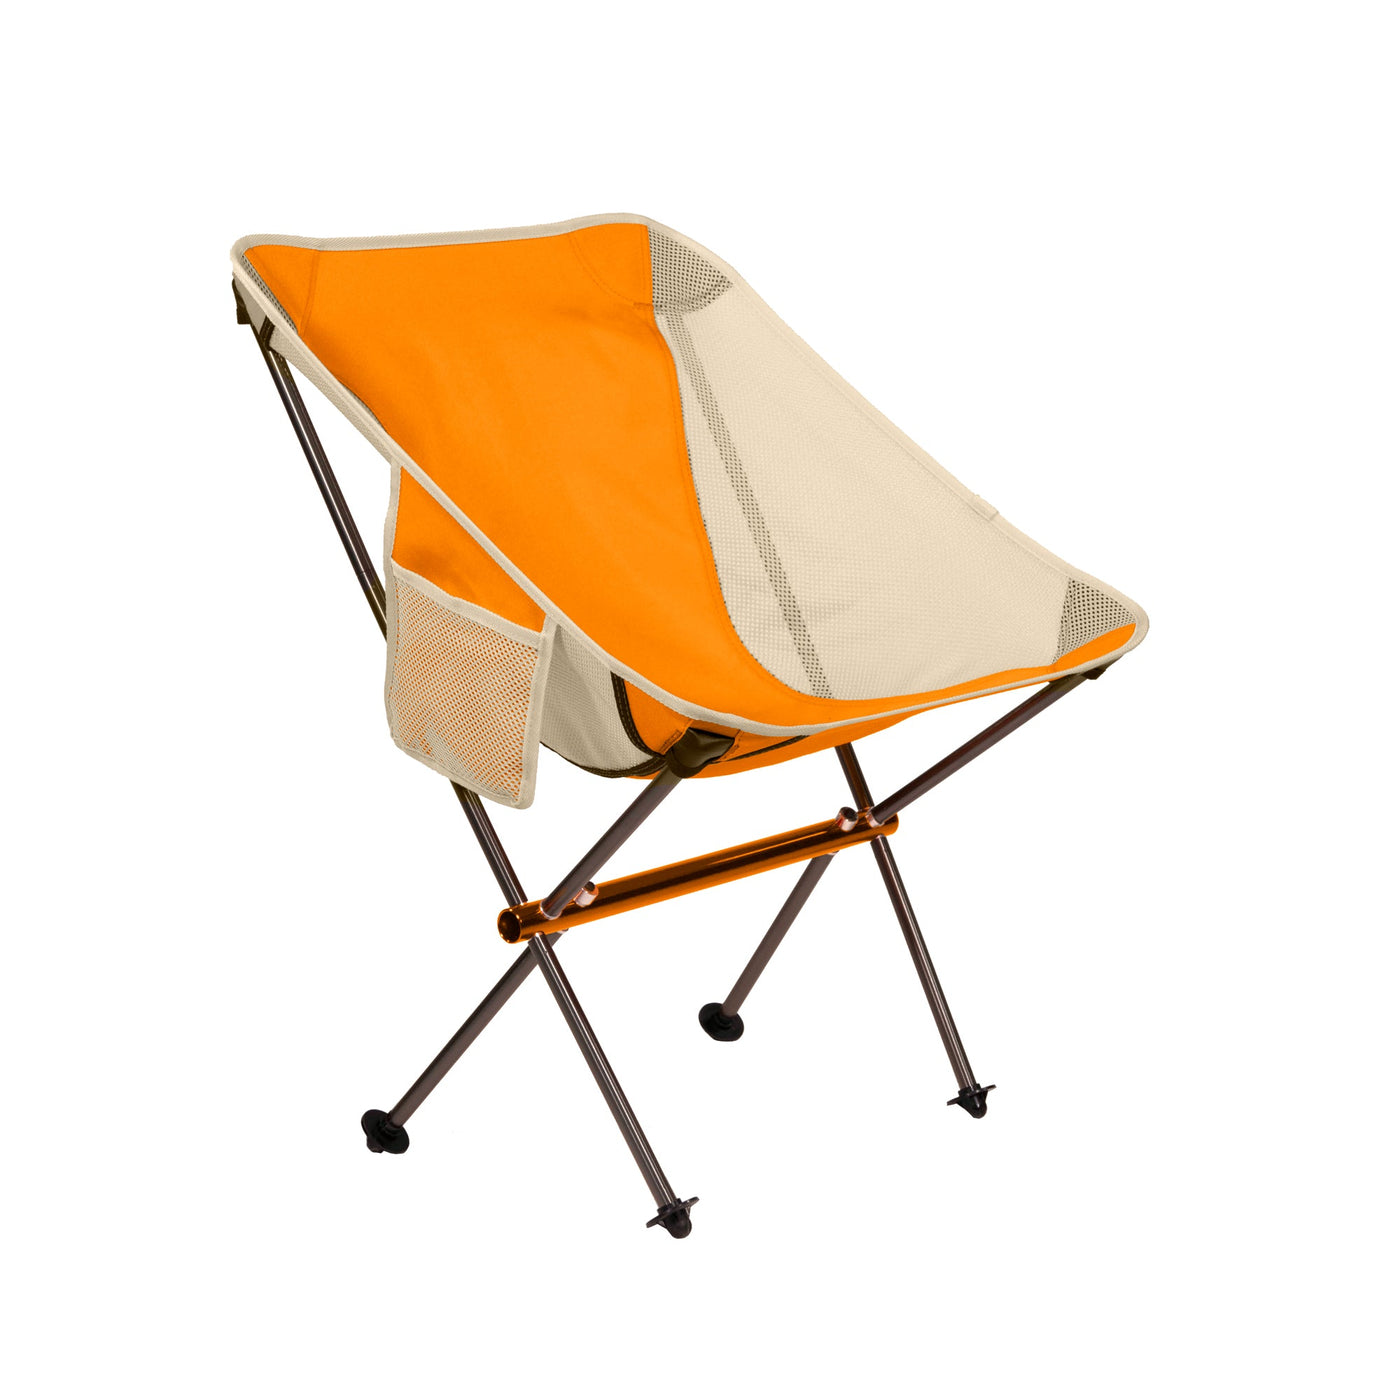 Ridgeline Camp Chair Short by Klymit